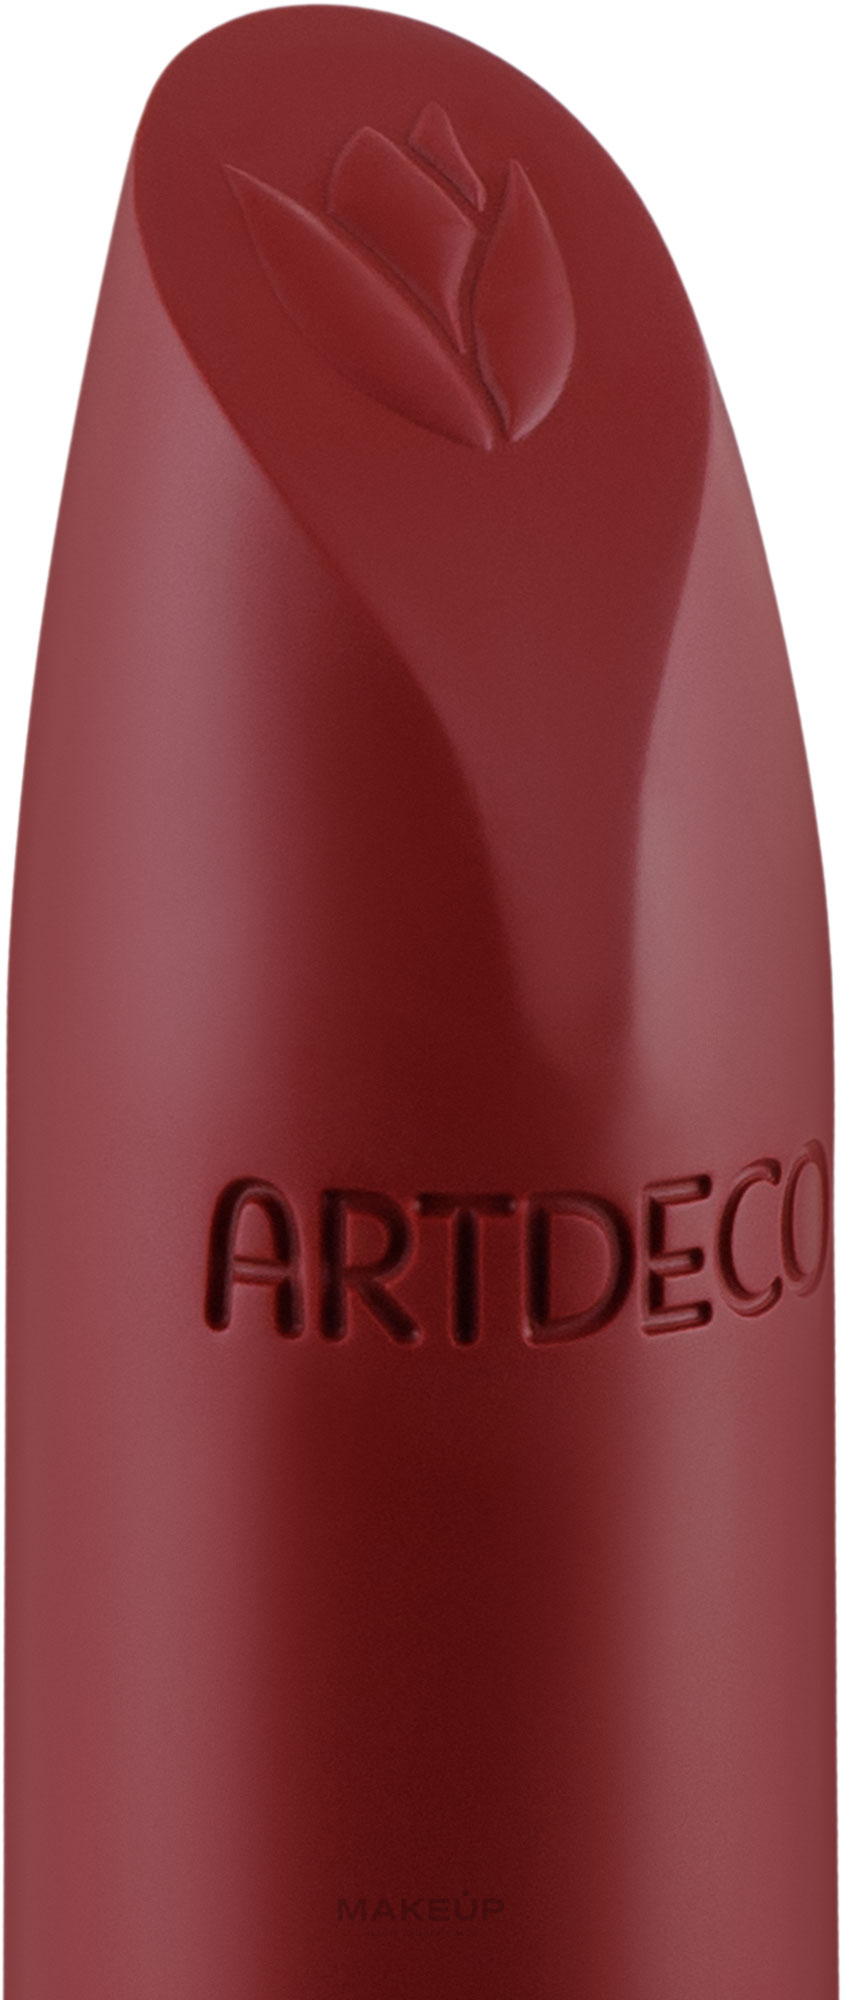 Кремова помада для губ - Artdeco Natural Cream Lipstick — фото 604 - Rose Bouquet